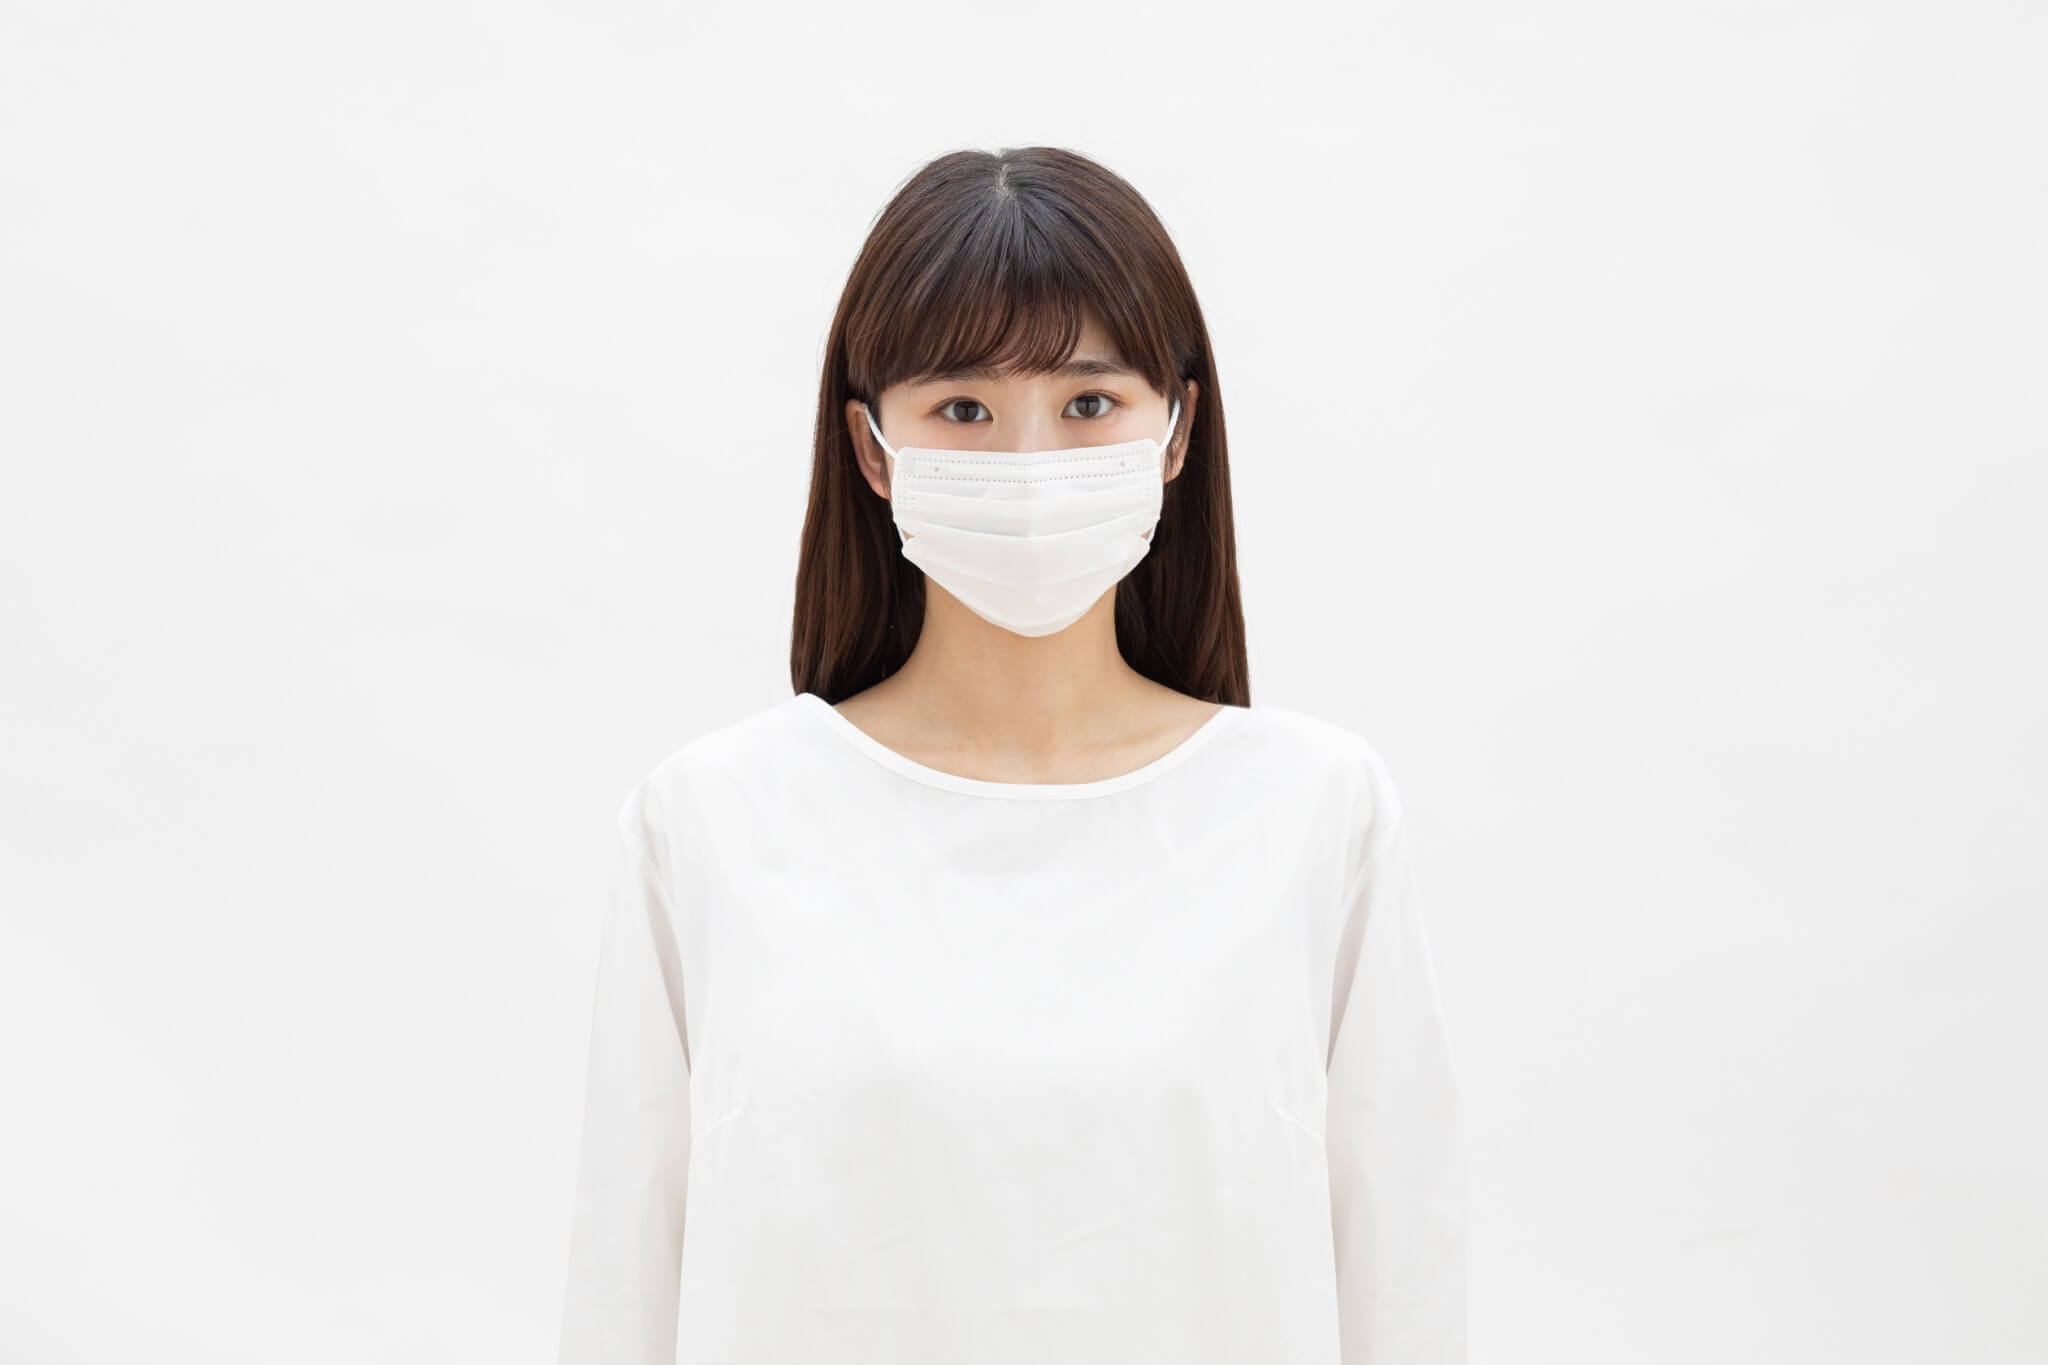 IRIS OHYAMA Face Mask หน้ากากอนามัย iris ประสิทธิภาพแผ่นกรองหนา 3 ชั้น ช่วยป้องกันเชื้อโรค ไวรัสและฝุ่นละออง PM 2.5 ได้ถึง 99% จุดเด่นสำคัญคือการออกแบบหน้ากาก V-cut หรือมุมเว้าด้านข้างแก้มช่วยกระชับใบหน้า